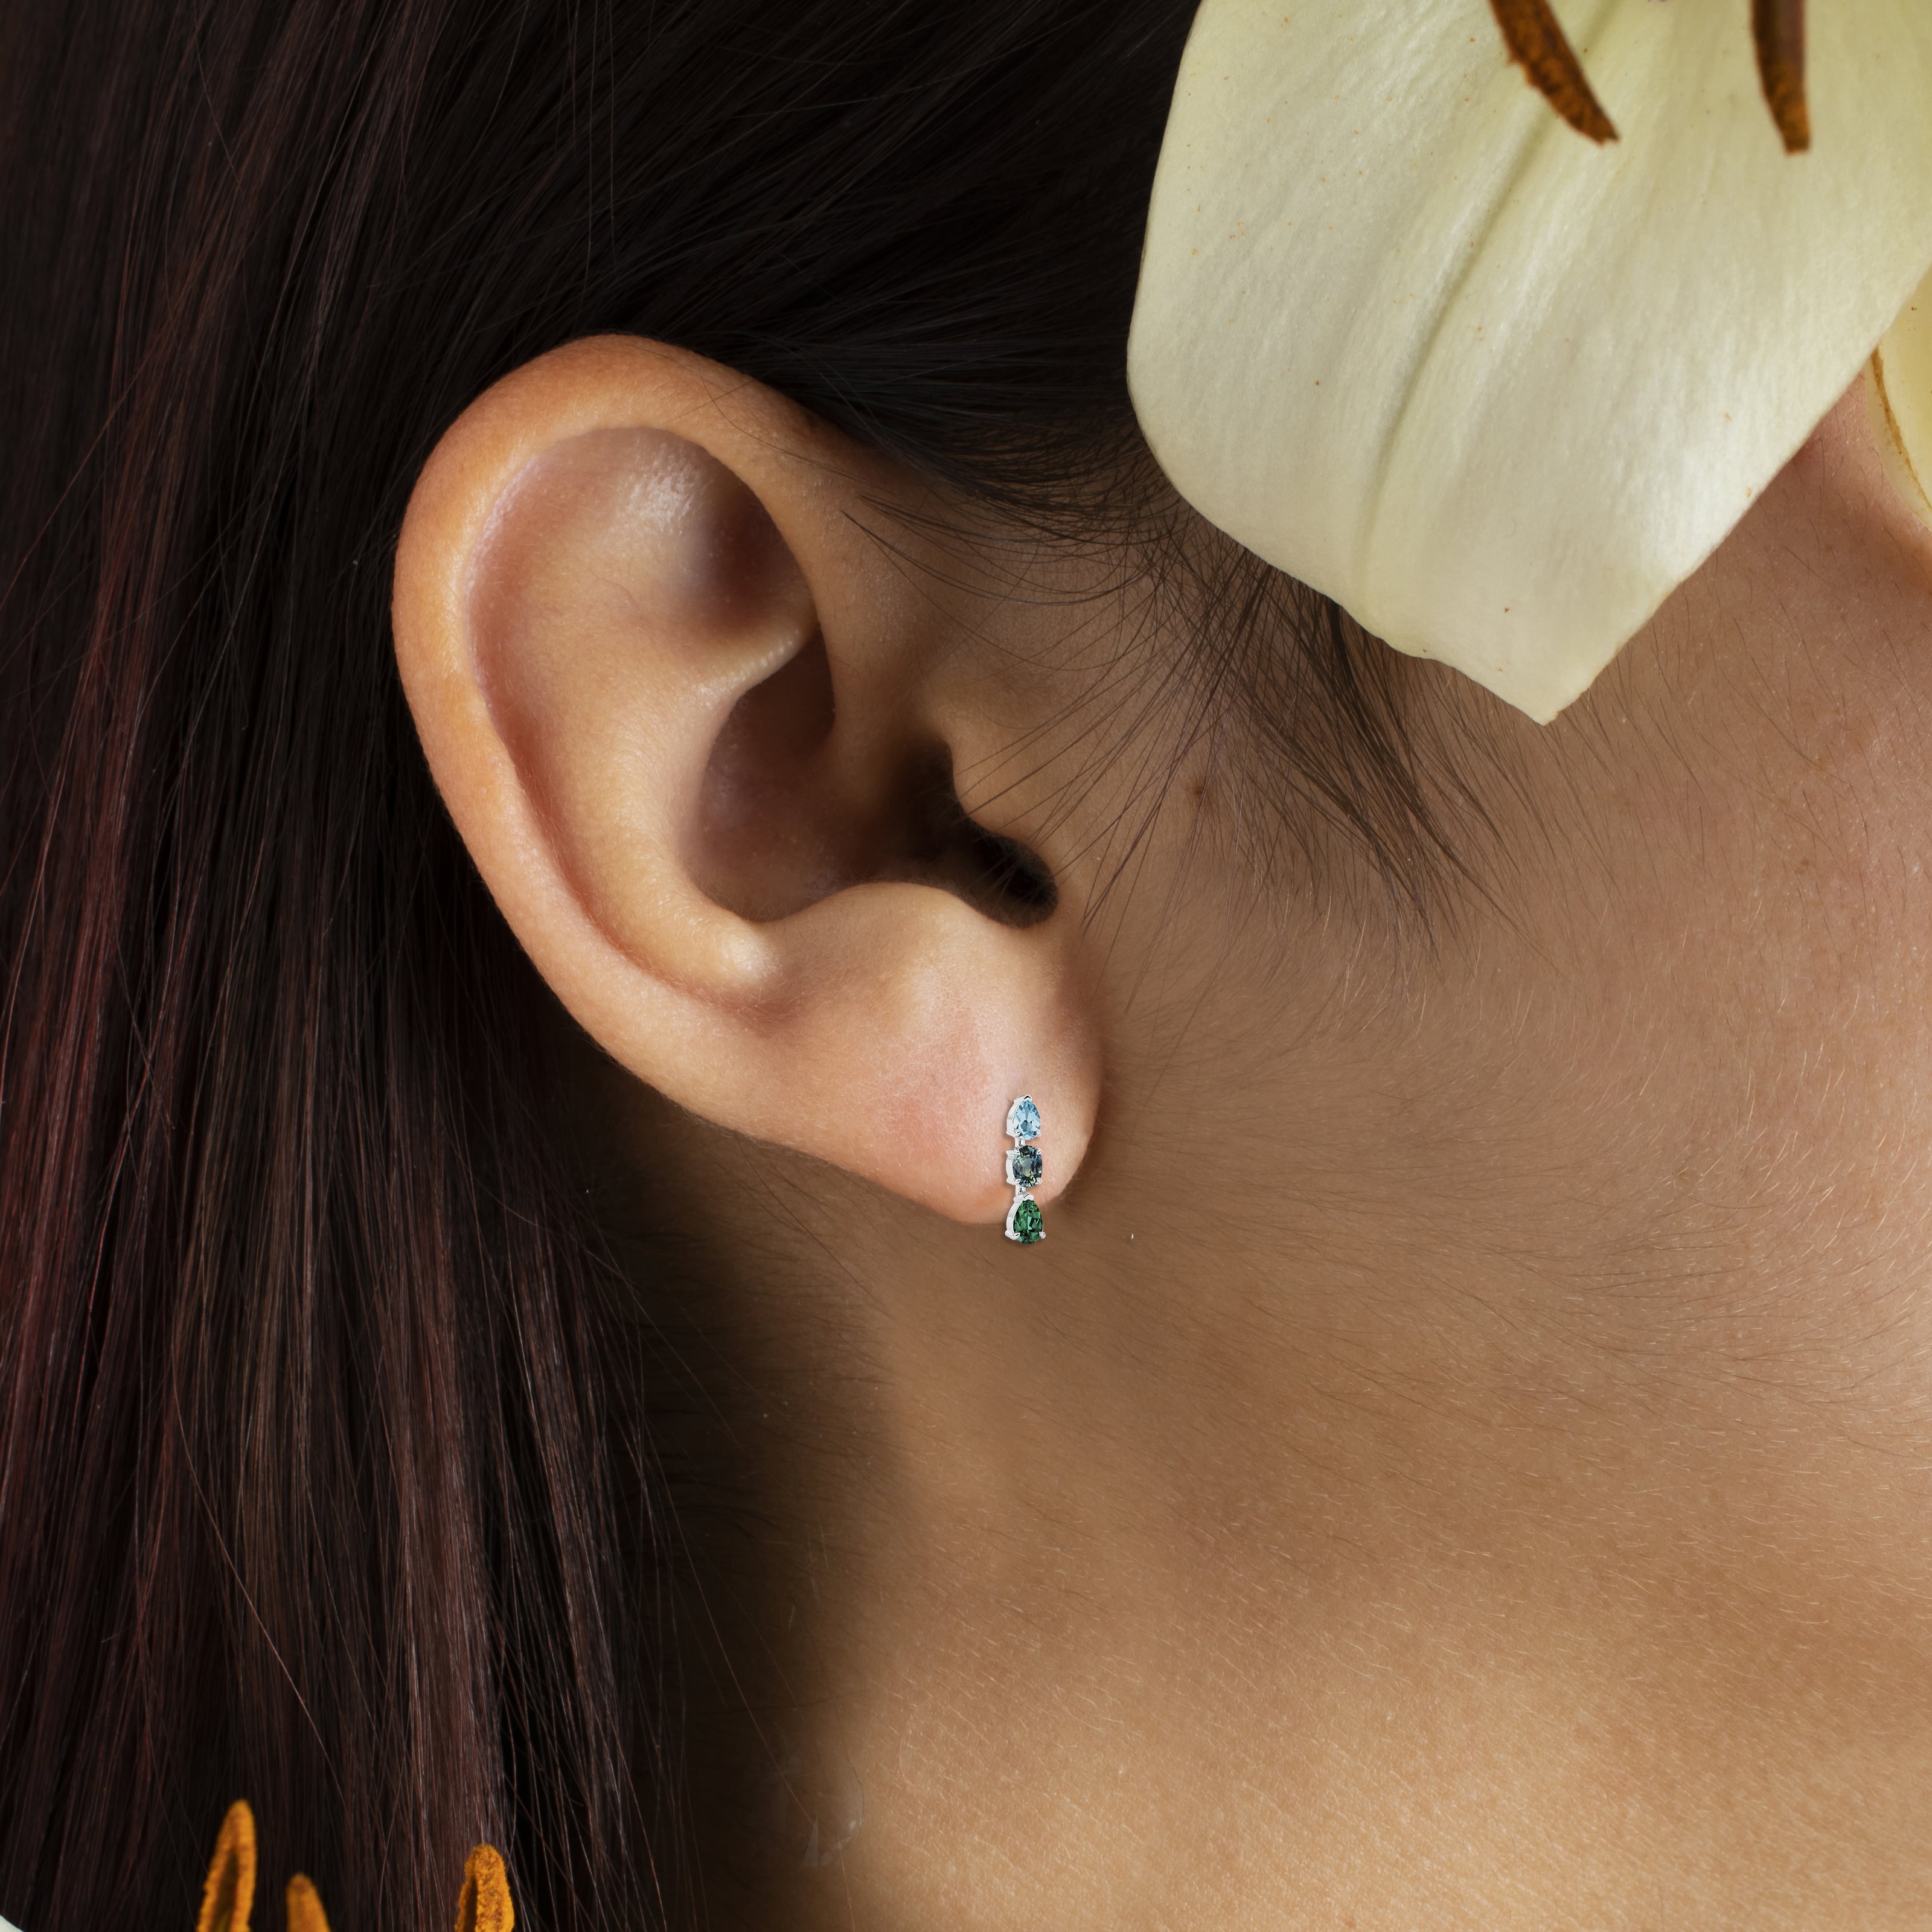 precious stone earrings on model ear